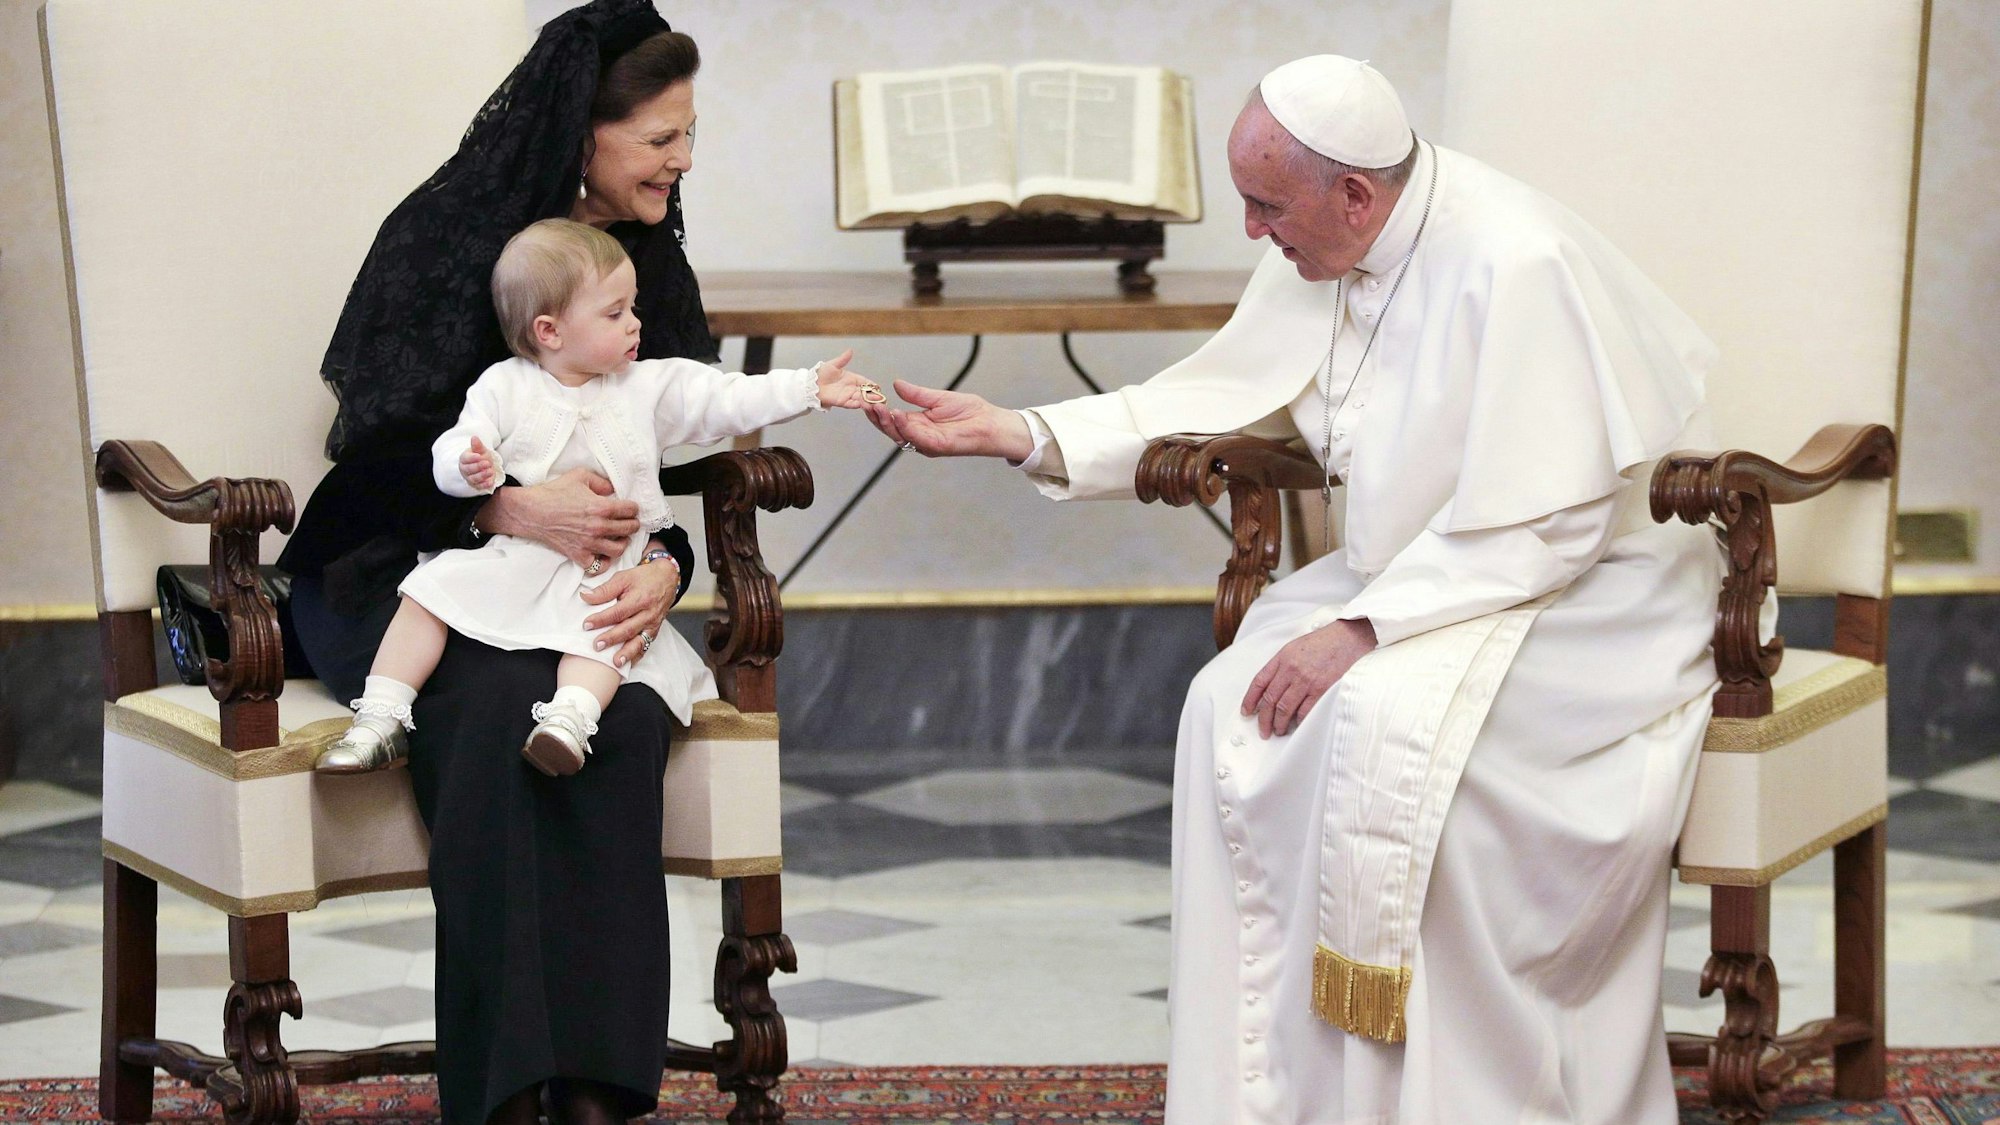 Königin Silvia von Schweden, hier mit Enkelin Leonore, trug bei ihrer Audienz mit Papst Franziskus 2015 traditionell Schwarz.